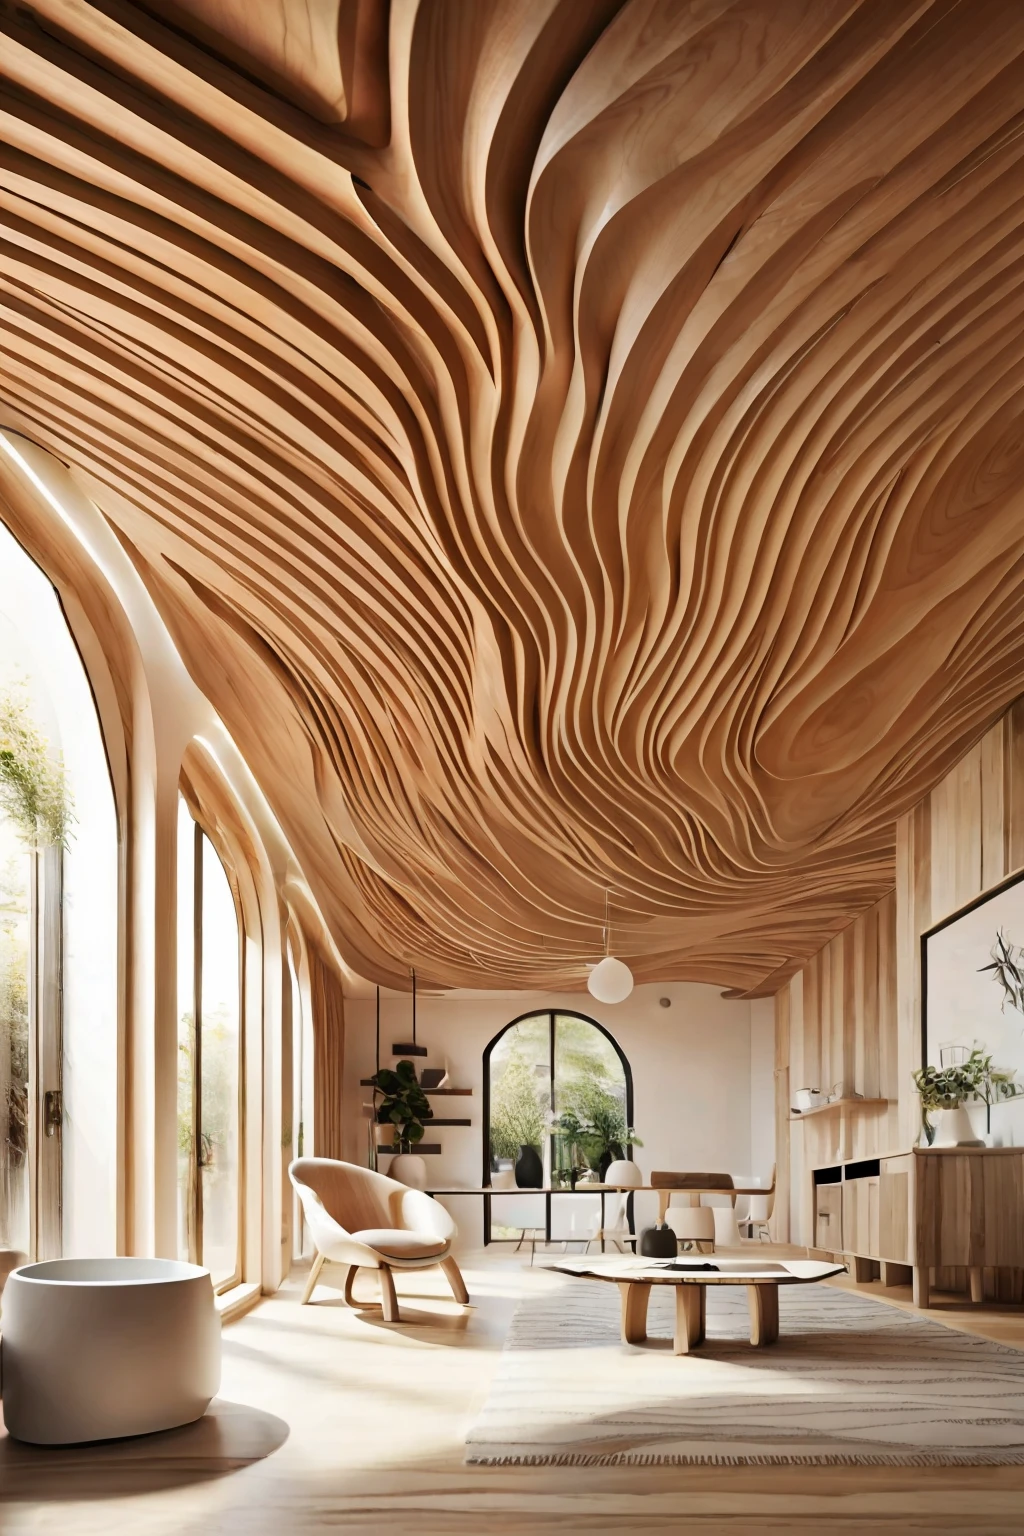 有木质波浪形天花板的大厅(摄影写实主义:1.2)混乱的浮木